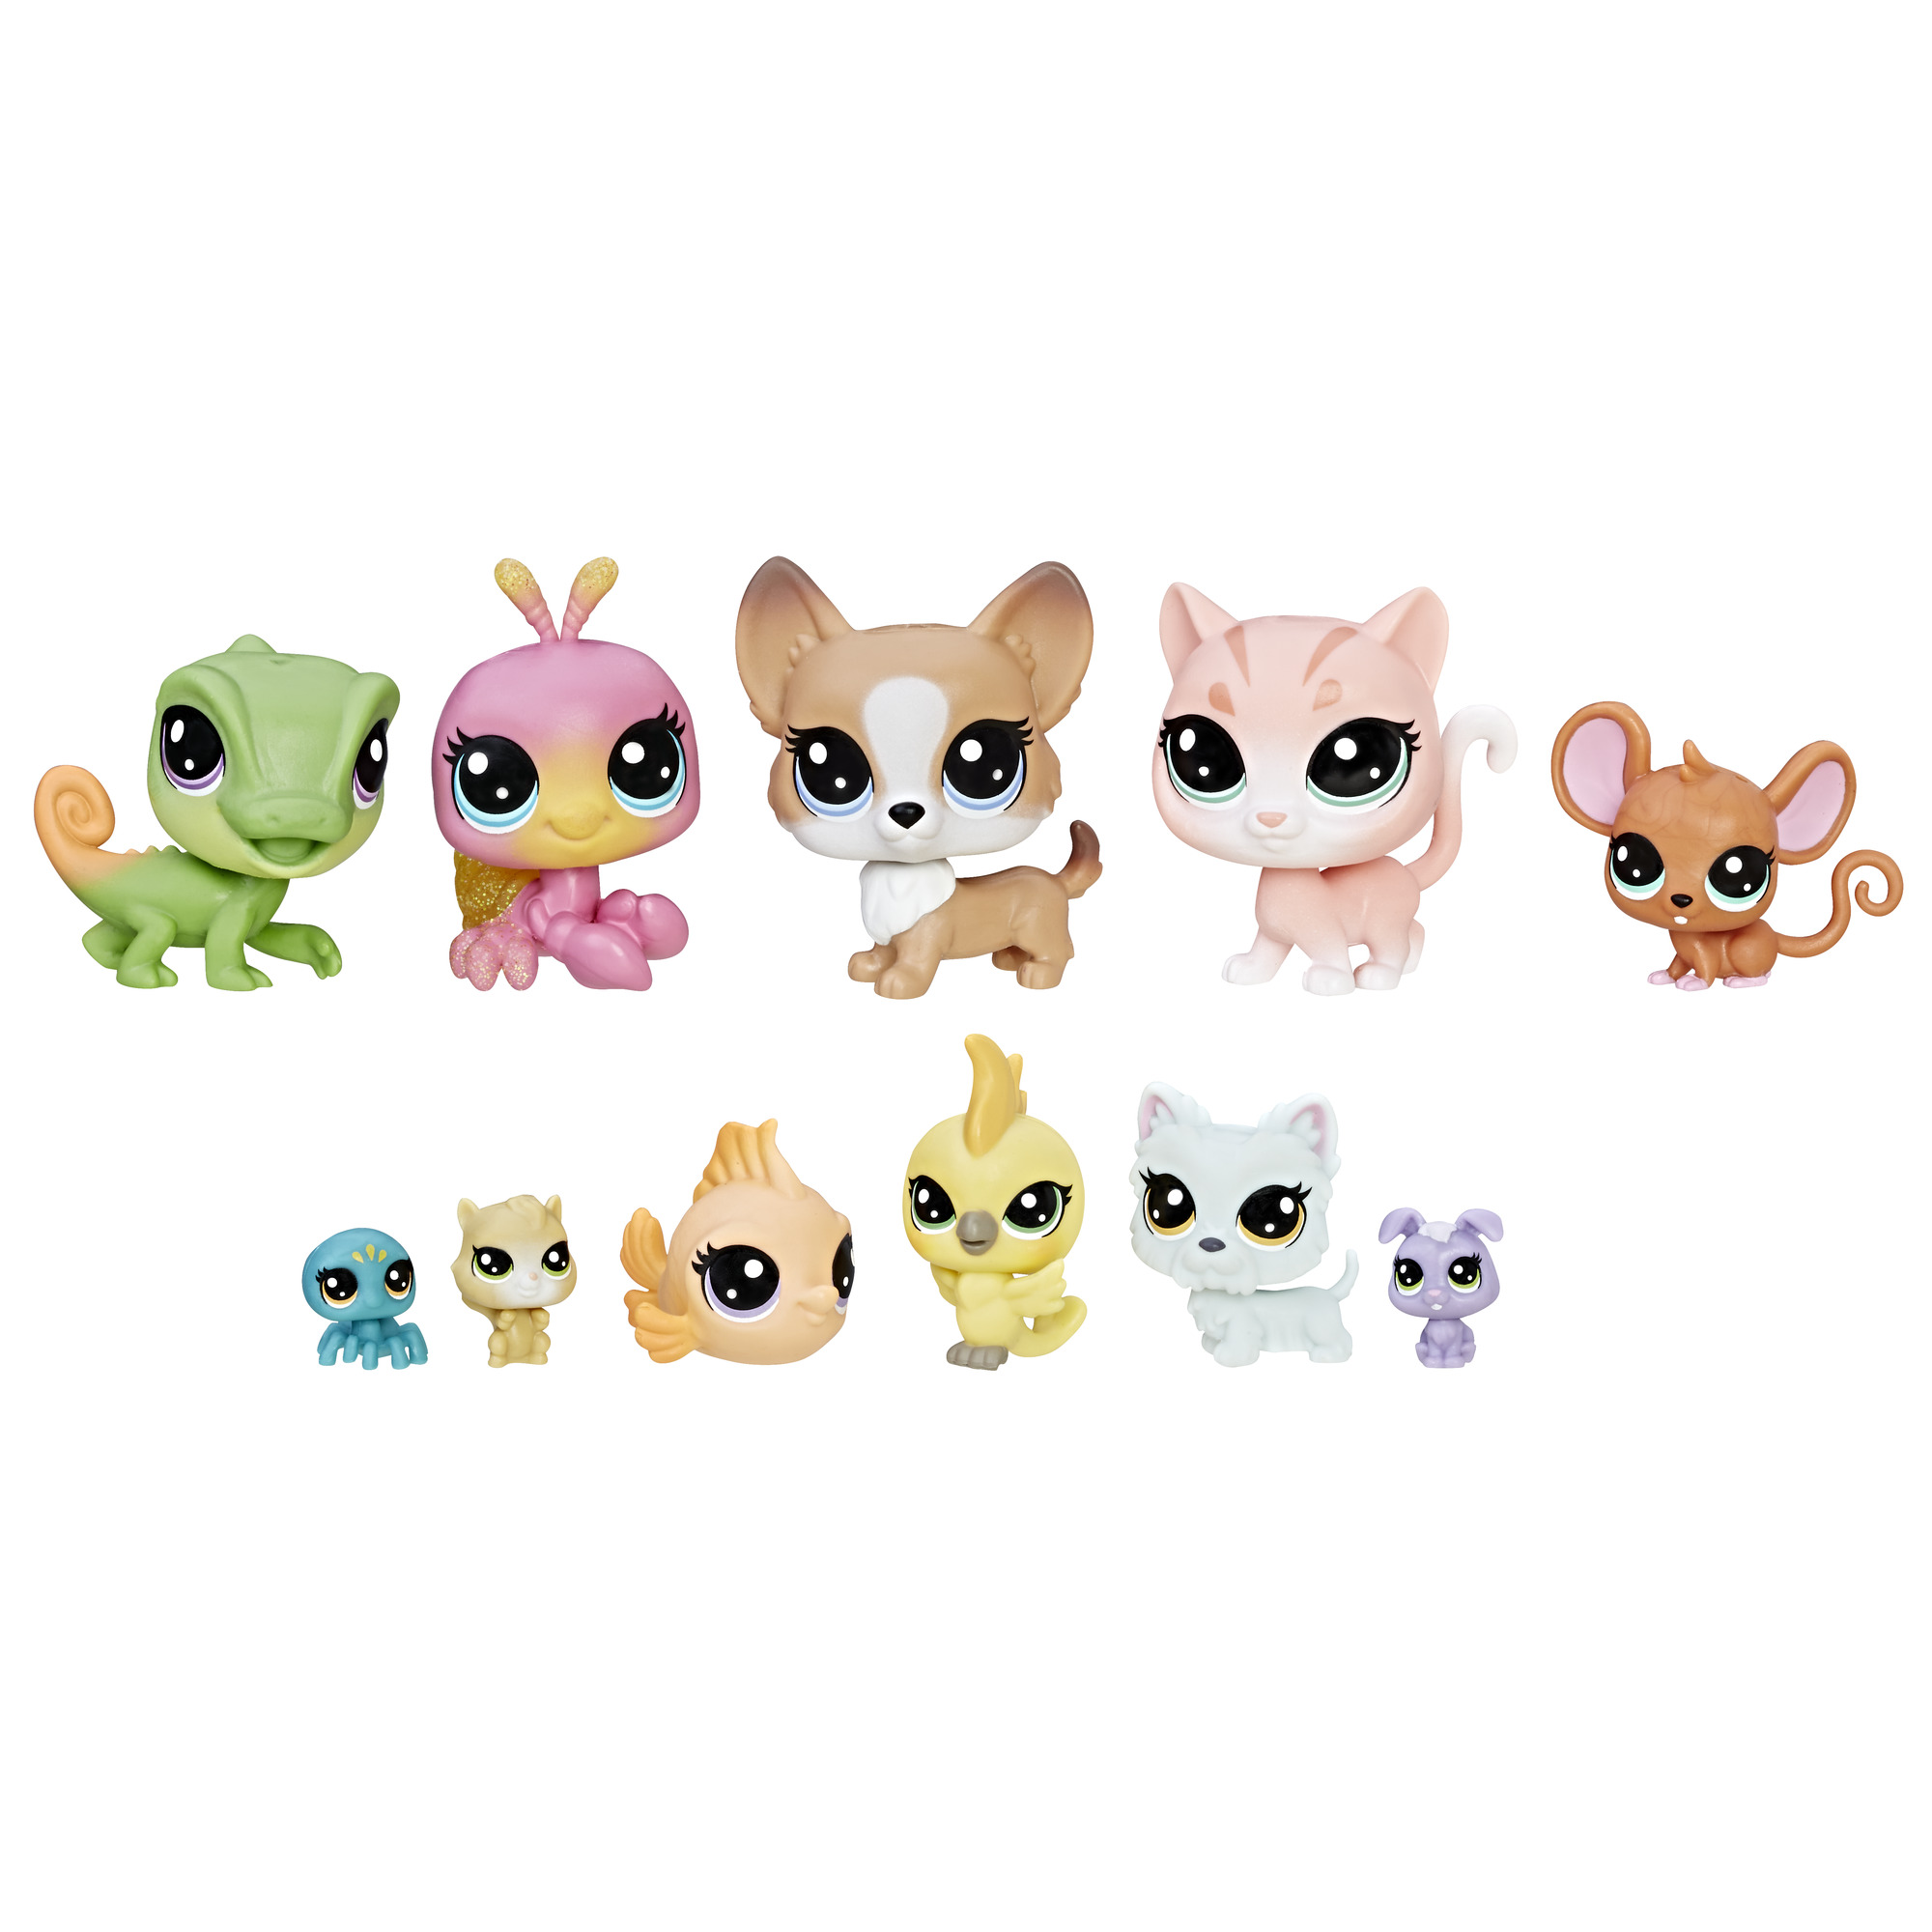 Набор pets. Игровой набор Littlest Pet shop коллекция петов b9343. Pet shop 1 коллекция лпс. Hasbro Littlest Pet shop. Hasbro LPS петы.